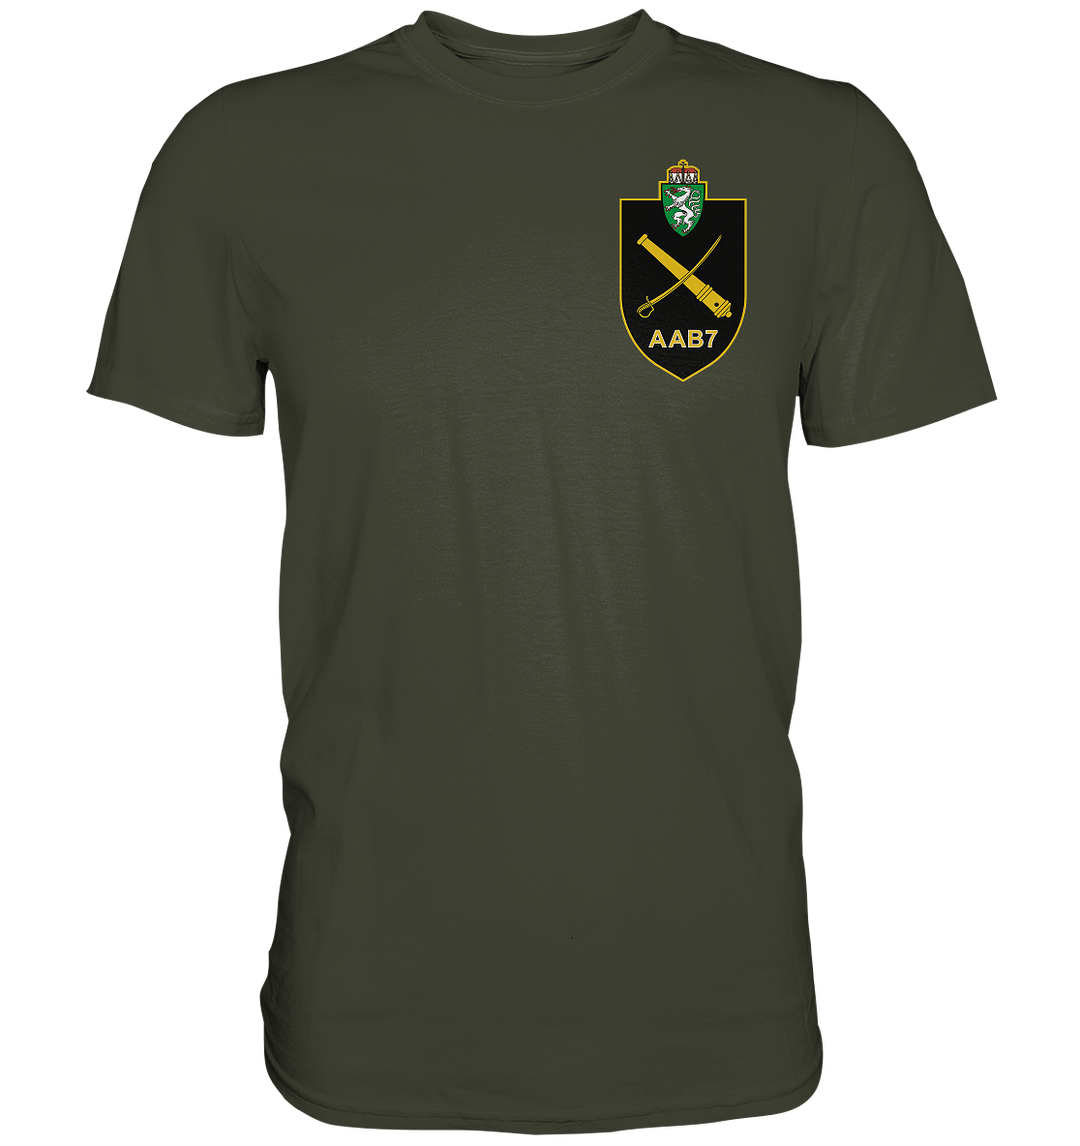 "Aufklärungs- und Artilleriebataillon 7" - Premium Shirt